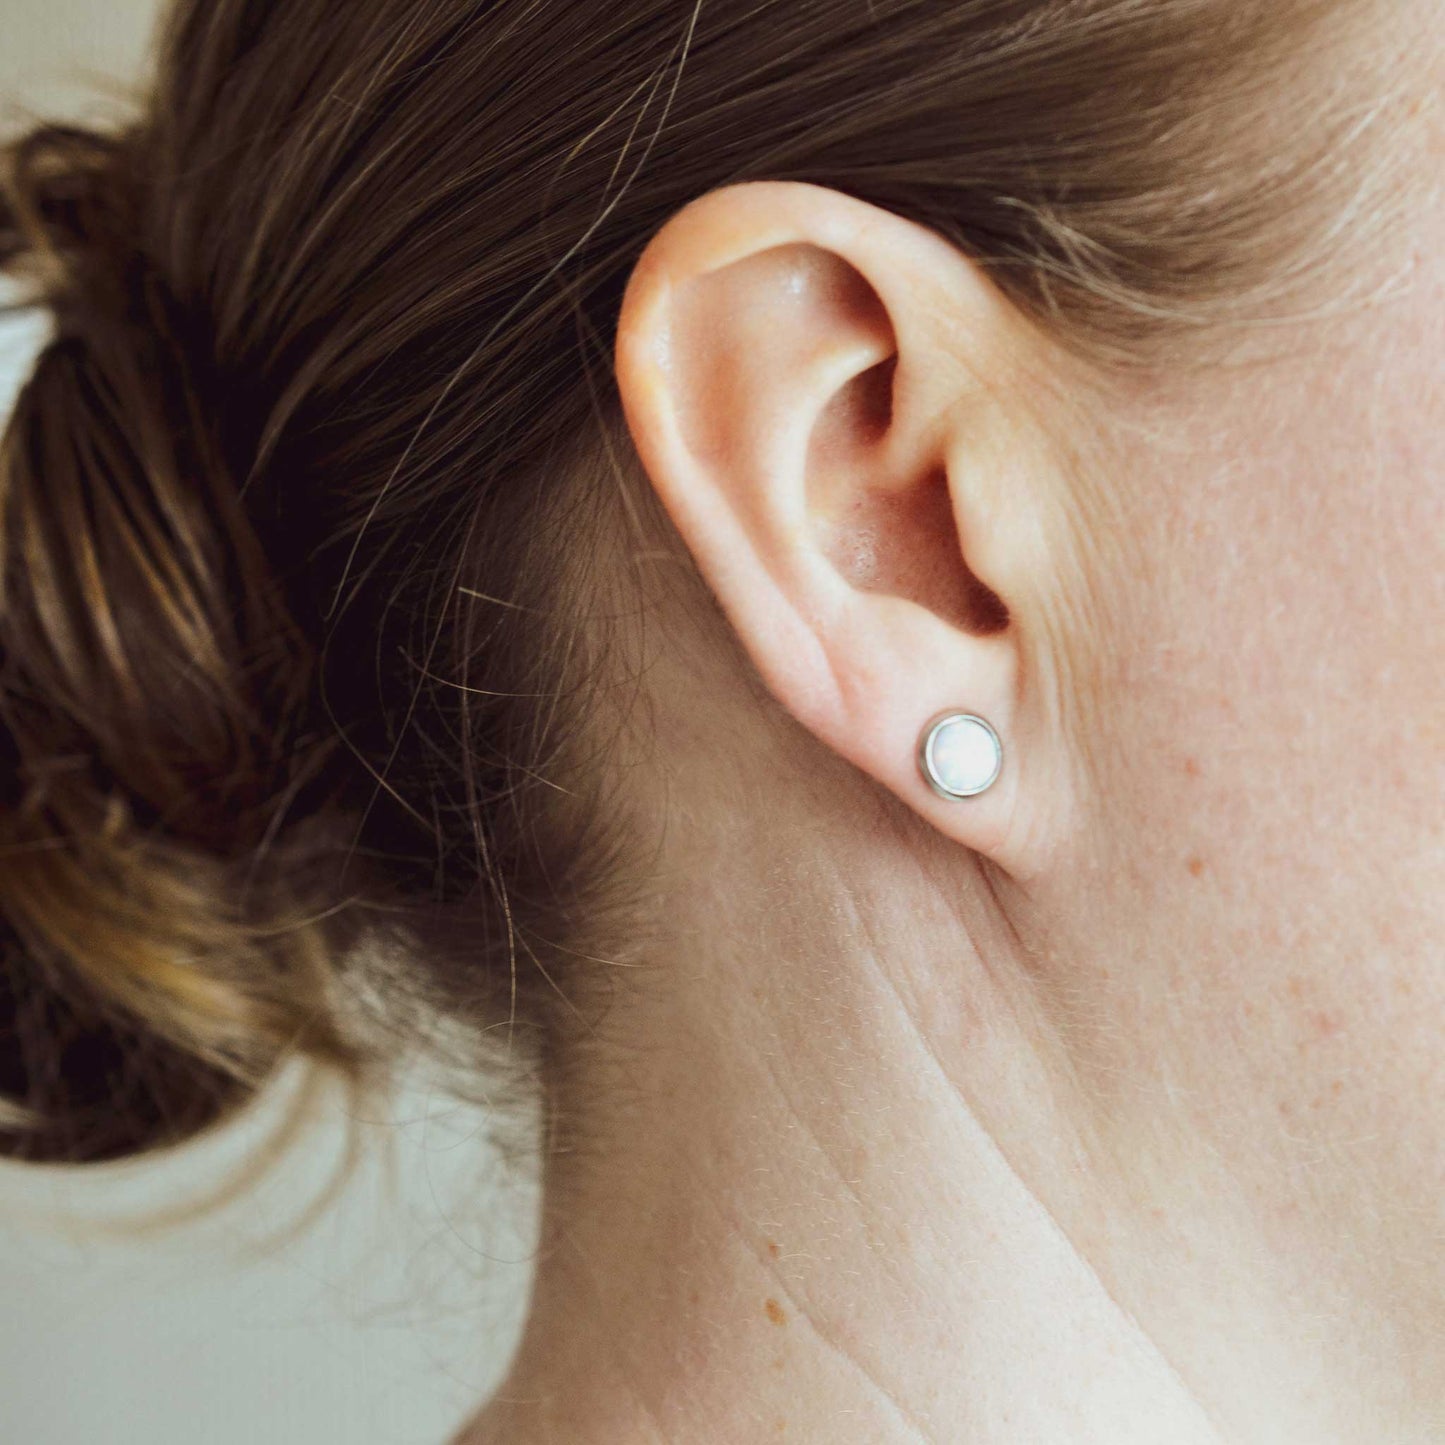 Woman wearing hypoallergenic round white Opal earring in earlobe